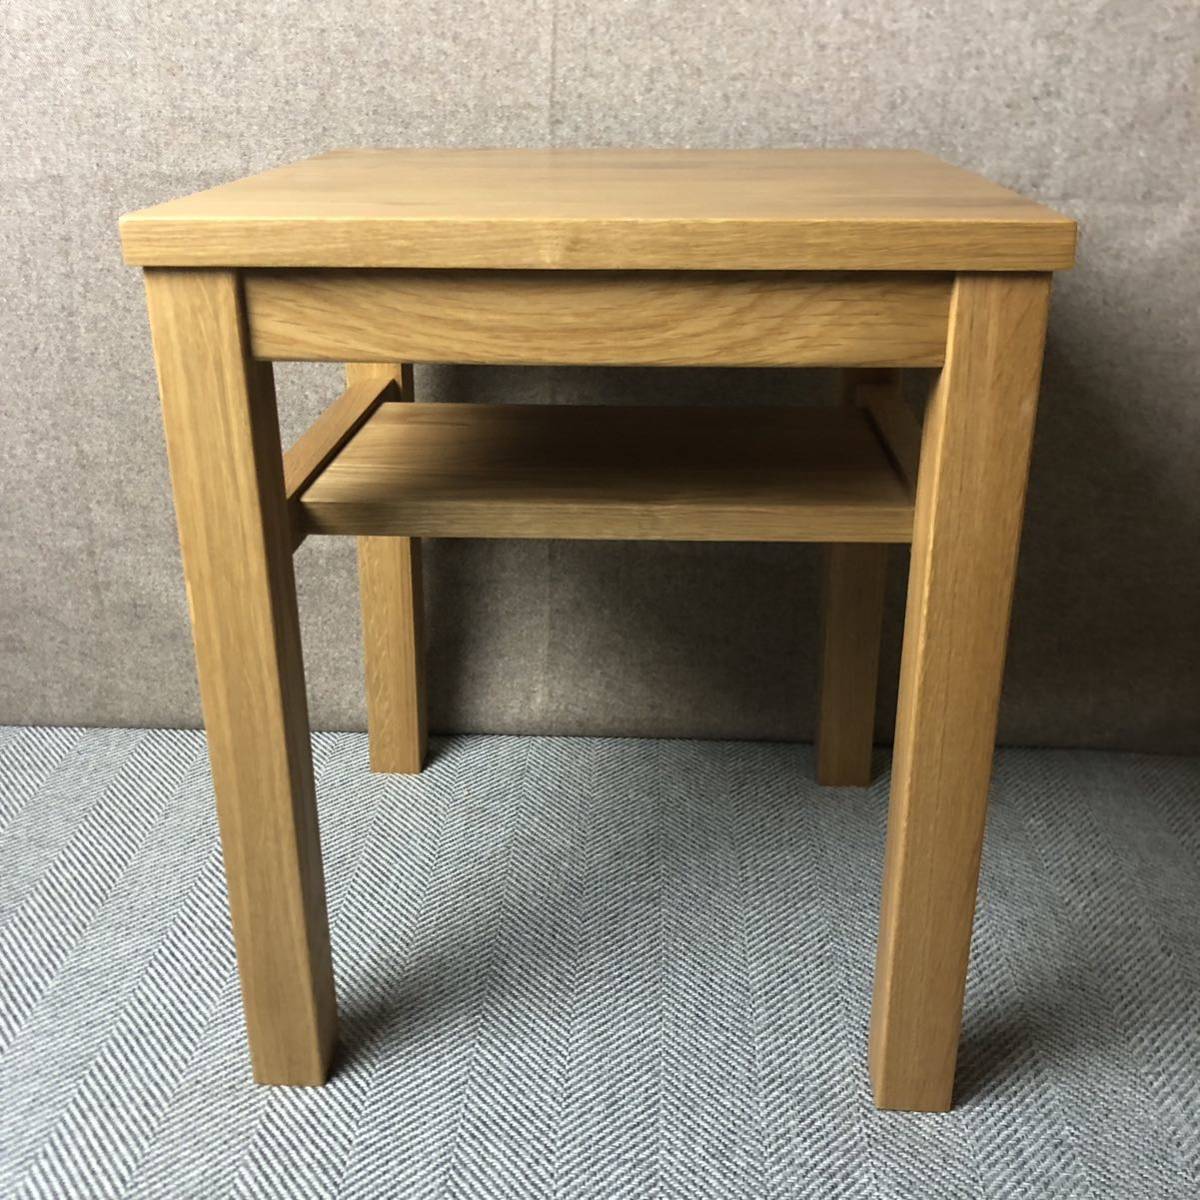 【送料無料】MUJI 無印良品 無垢材サイドテーブルベンチ・板座・オーク材/OHMR2160320003